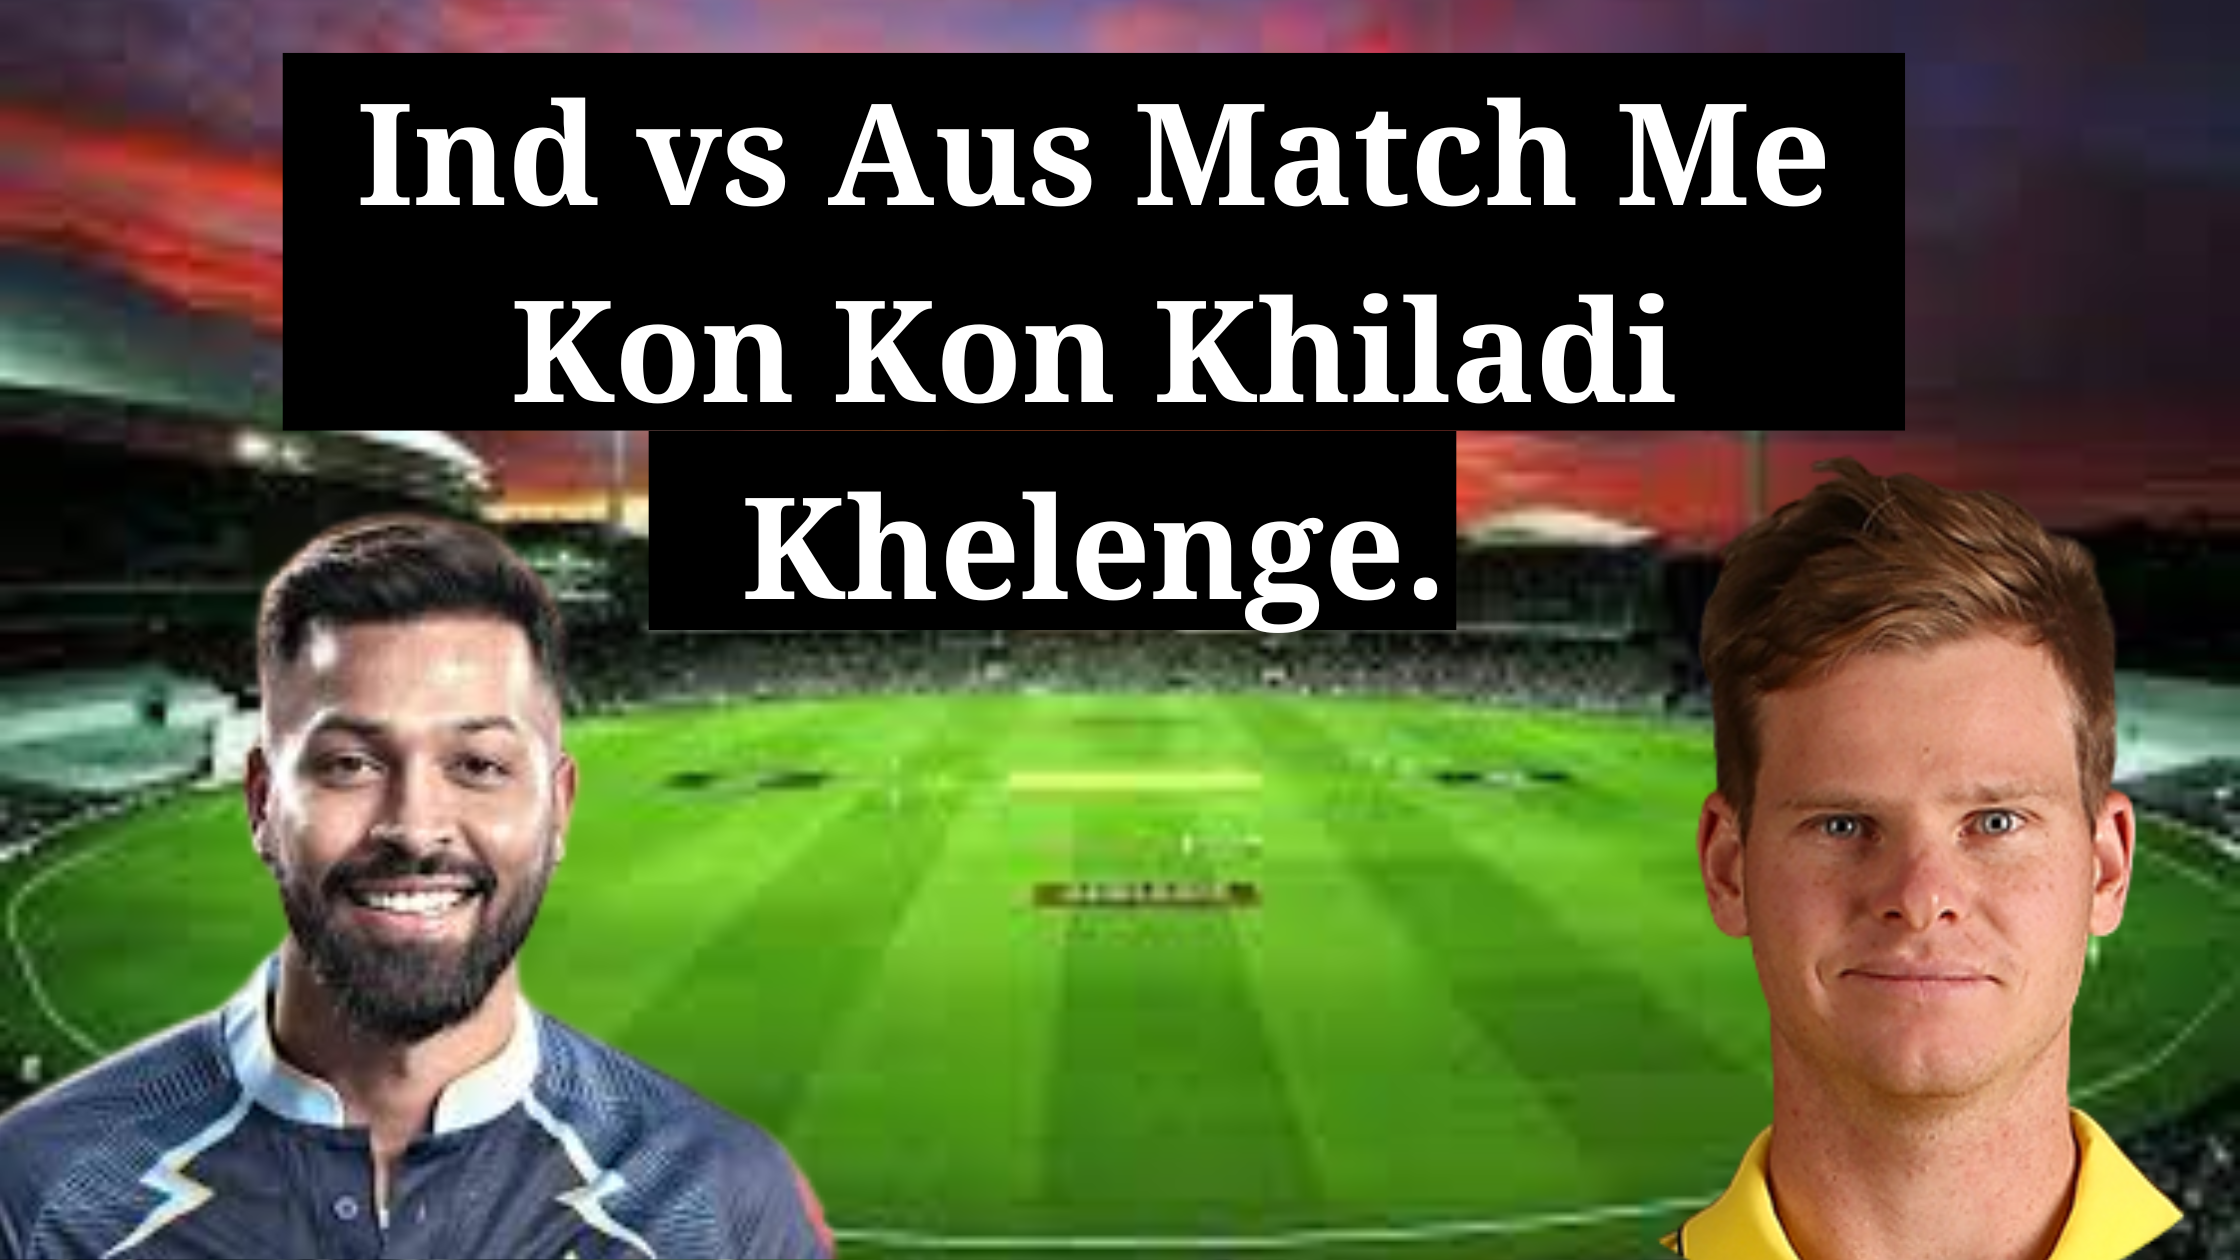 इंडिया vs ऑस्ट्रेलिया मैच में कौन-कौन खिलाड़ी खेलेंगे | Ind vs Aus Match Me Kon Kon Khiladi Khelenge.